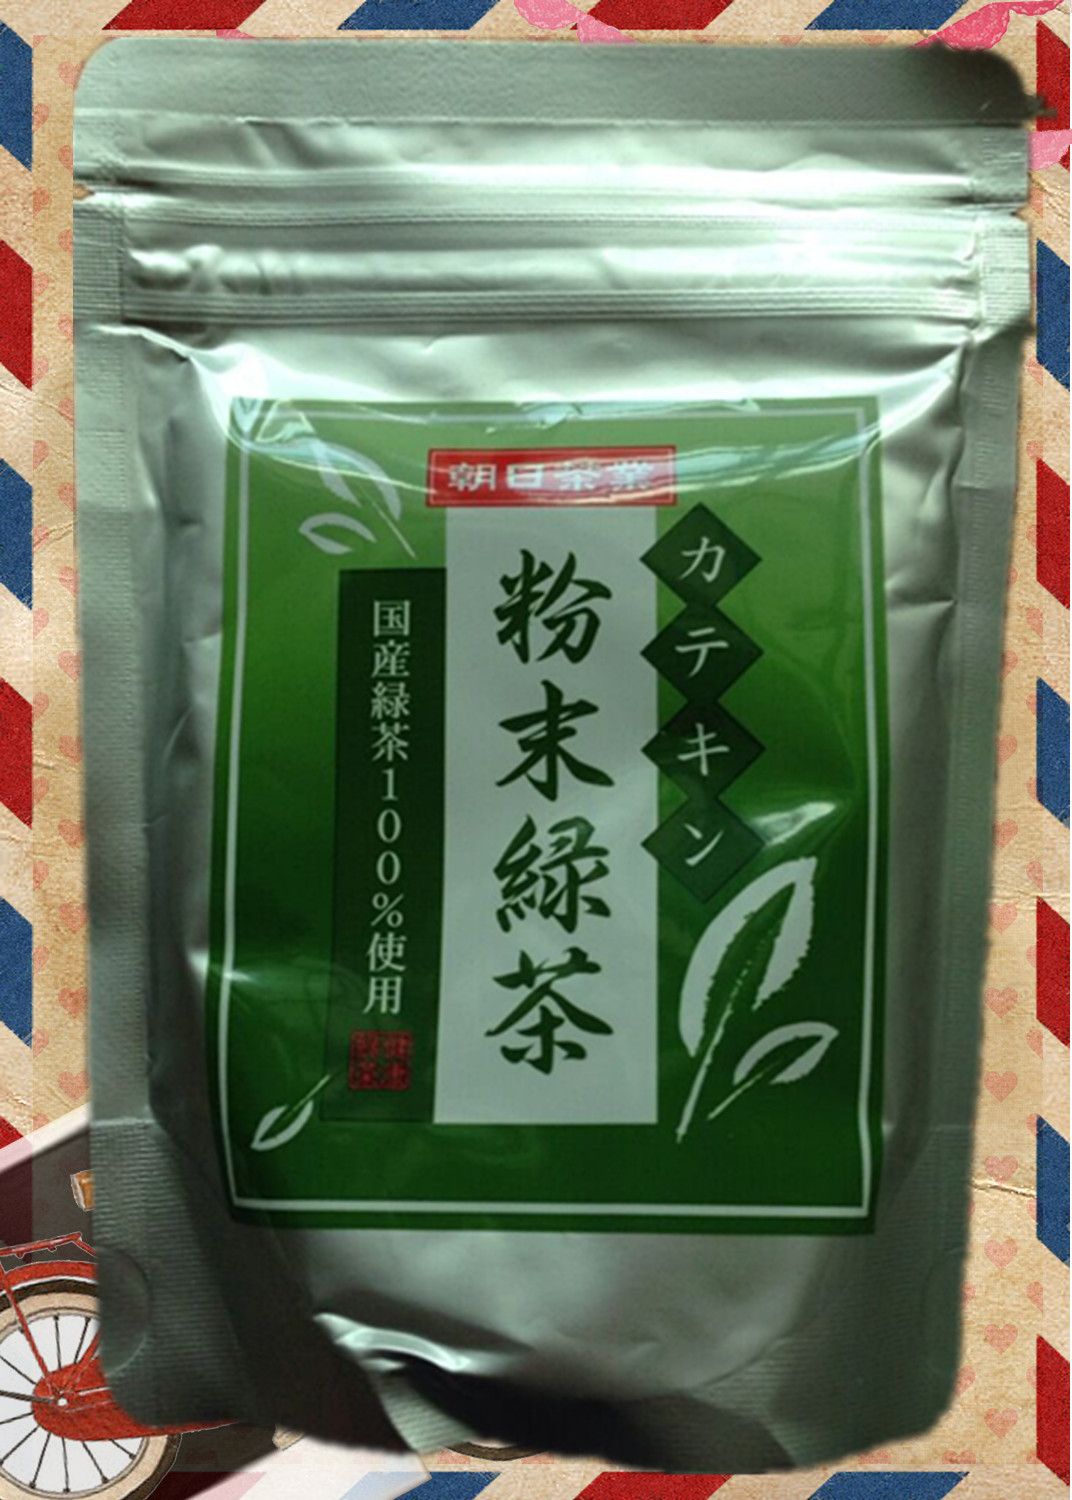 预约代购 日本原装进口朝日茶业 粉末绿茶粉100g装